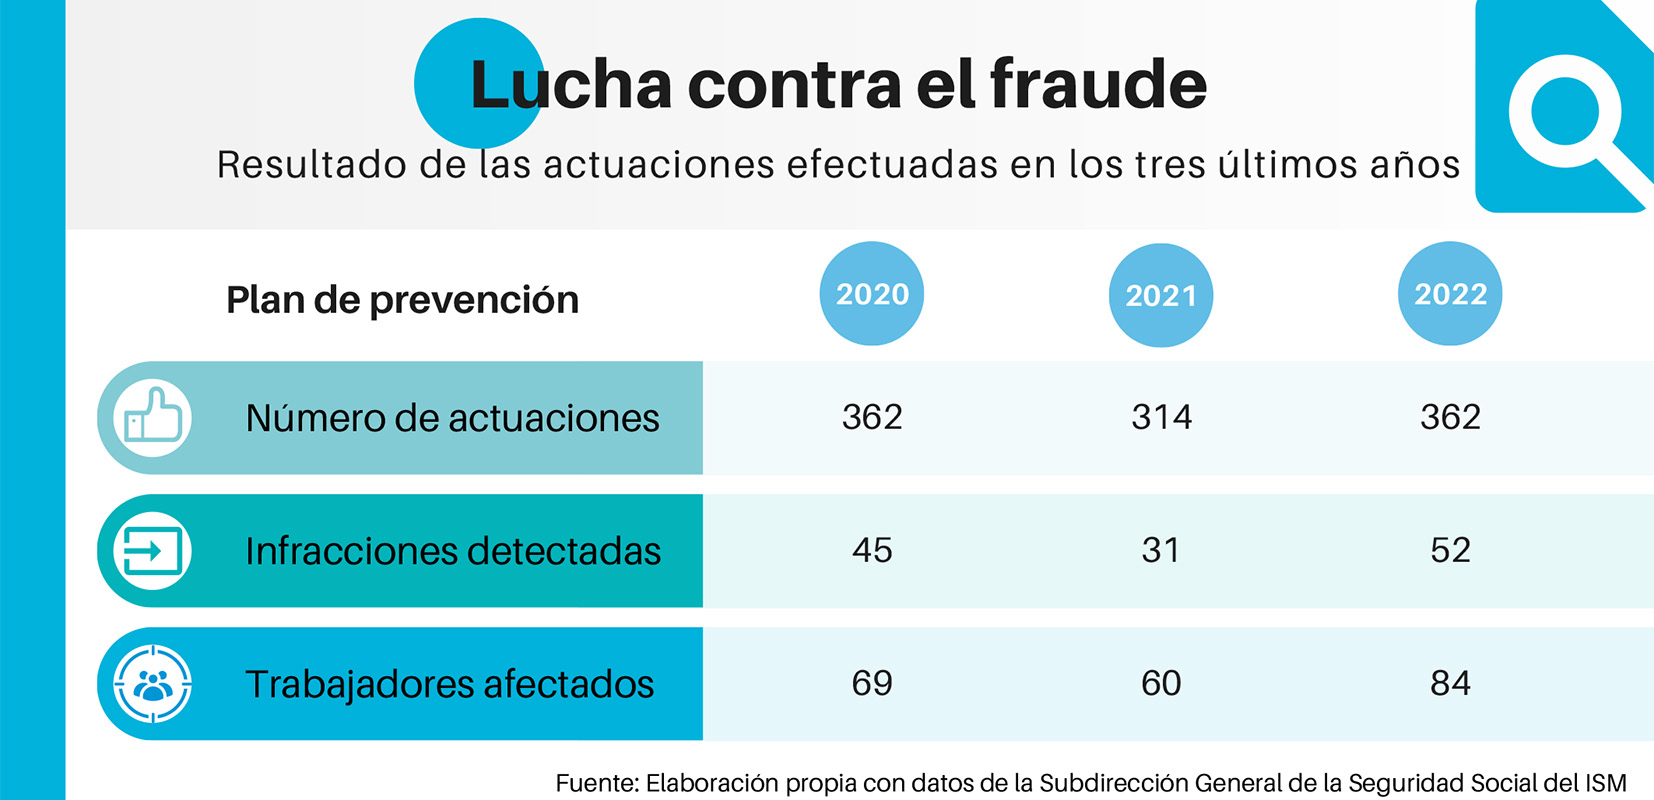 Grafico sobre el fraude de prestaciones sociales en el que se pueden ver el número de actuaciones realizadas, infracciones detectadasy trabajadores afectados